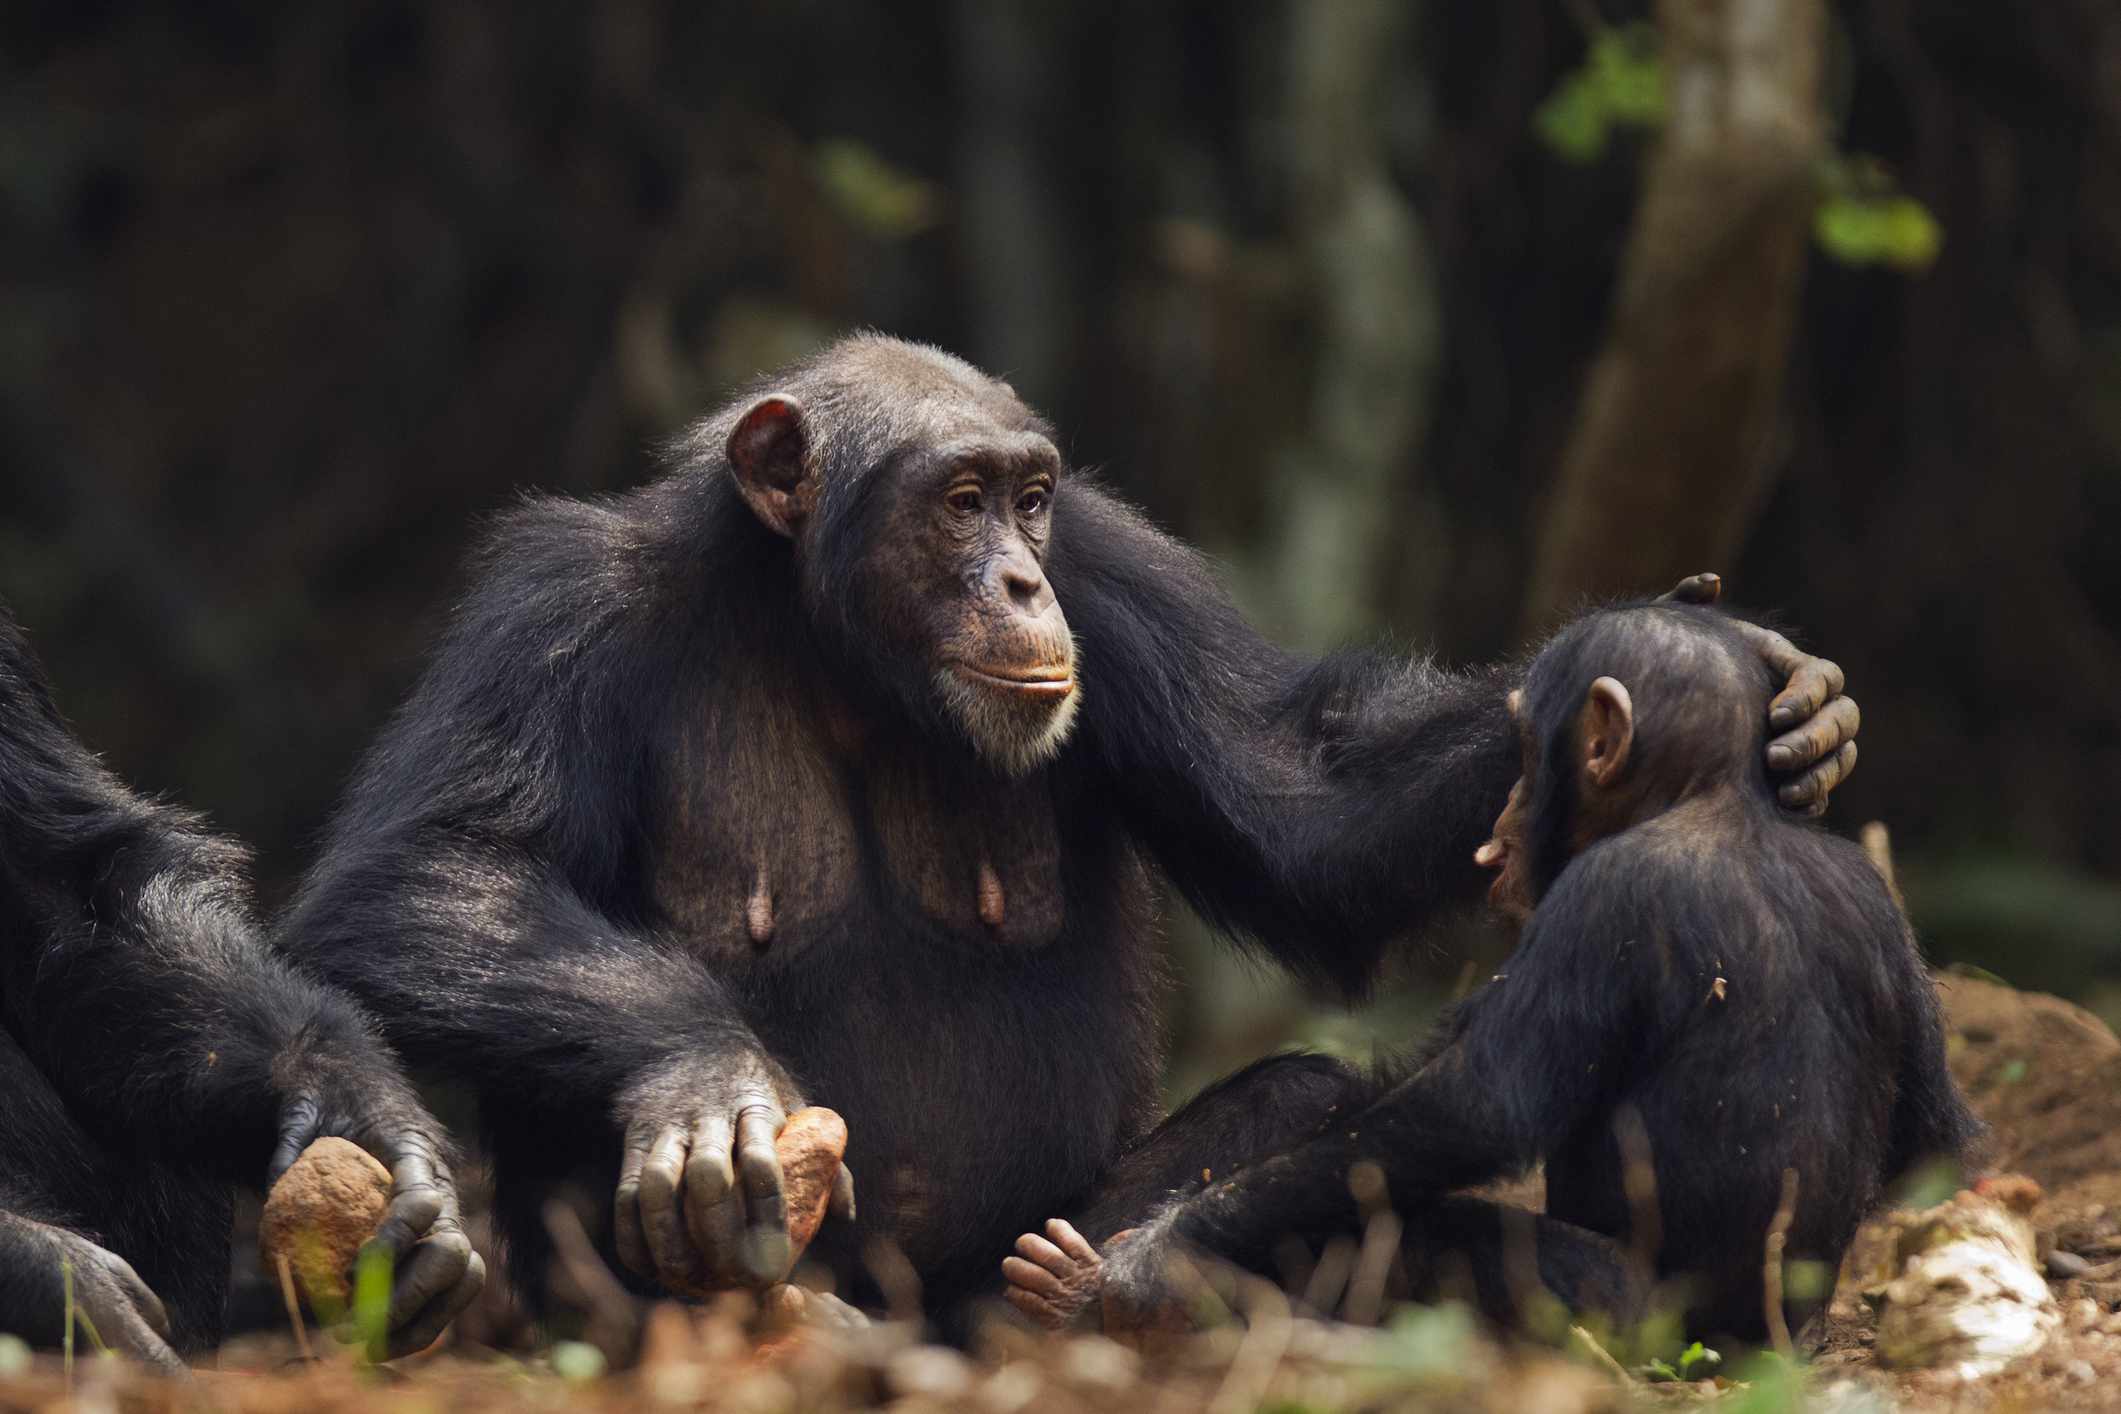 Una madre chimpancé consolando a su bebé frotándole la cabeza